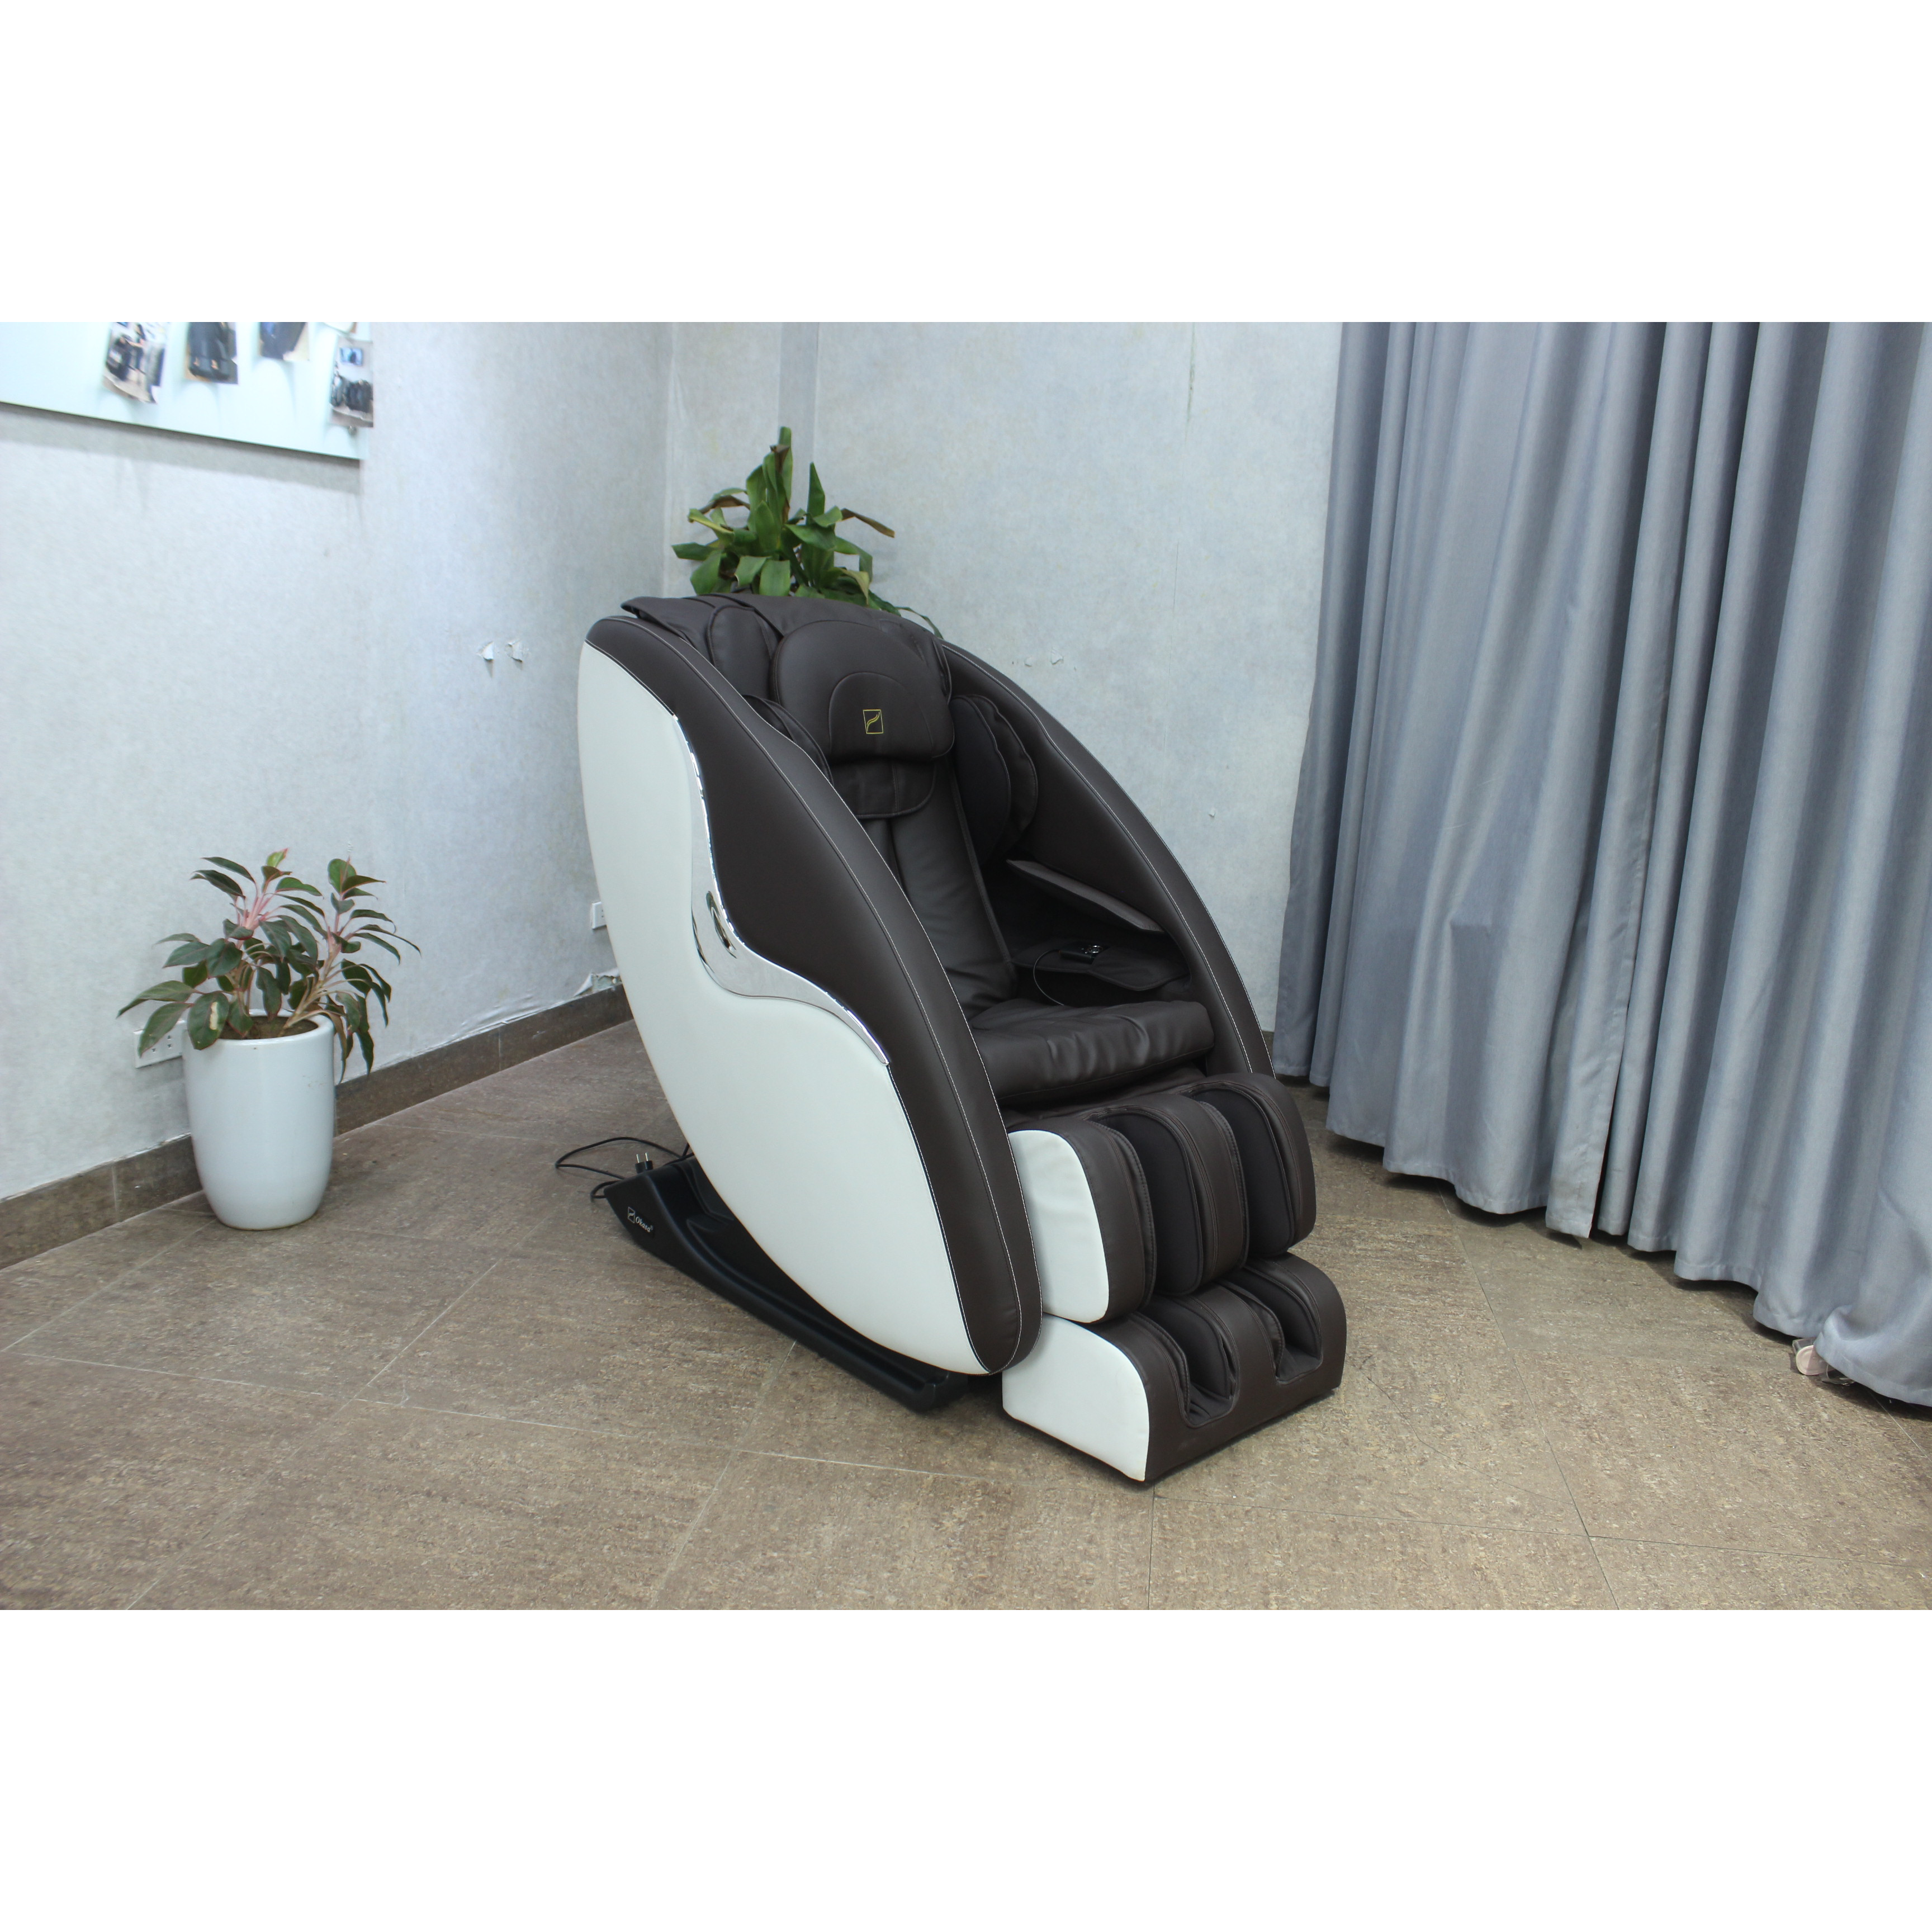 Ghế massage toàn thân Okasa OS-368 - Tặng kèm Xe đạp tập + Bạt phủ ghế + Bình xịt vệ sinh ghế + Thảm kê ghế